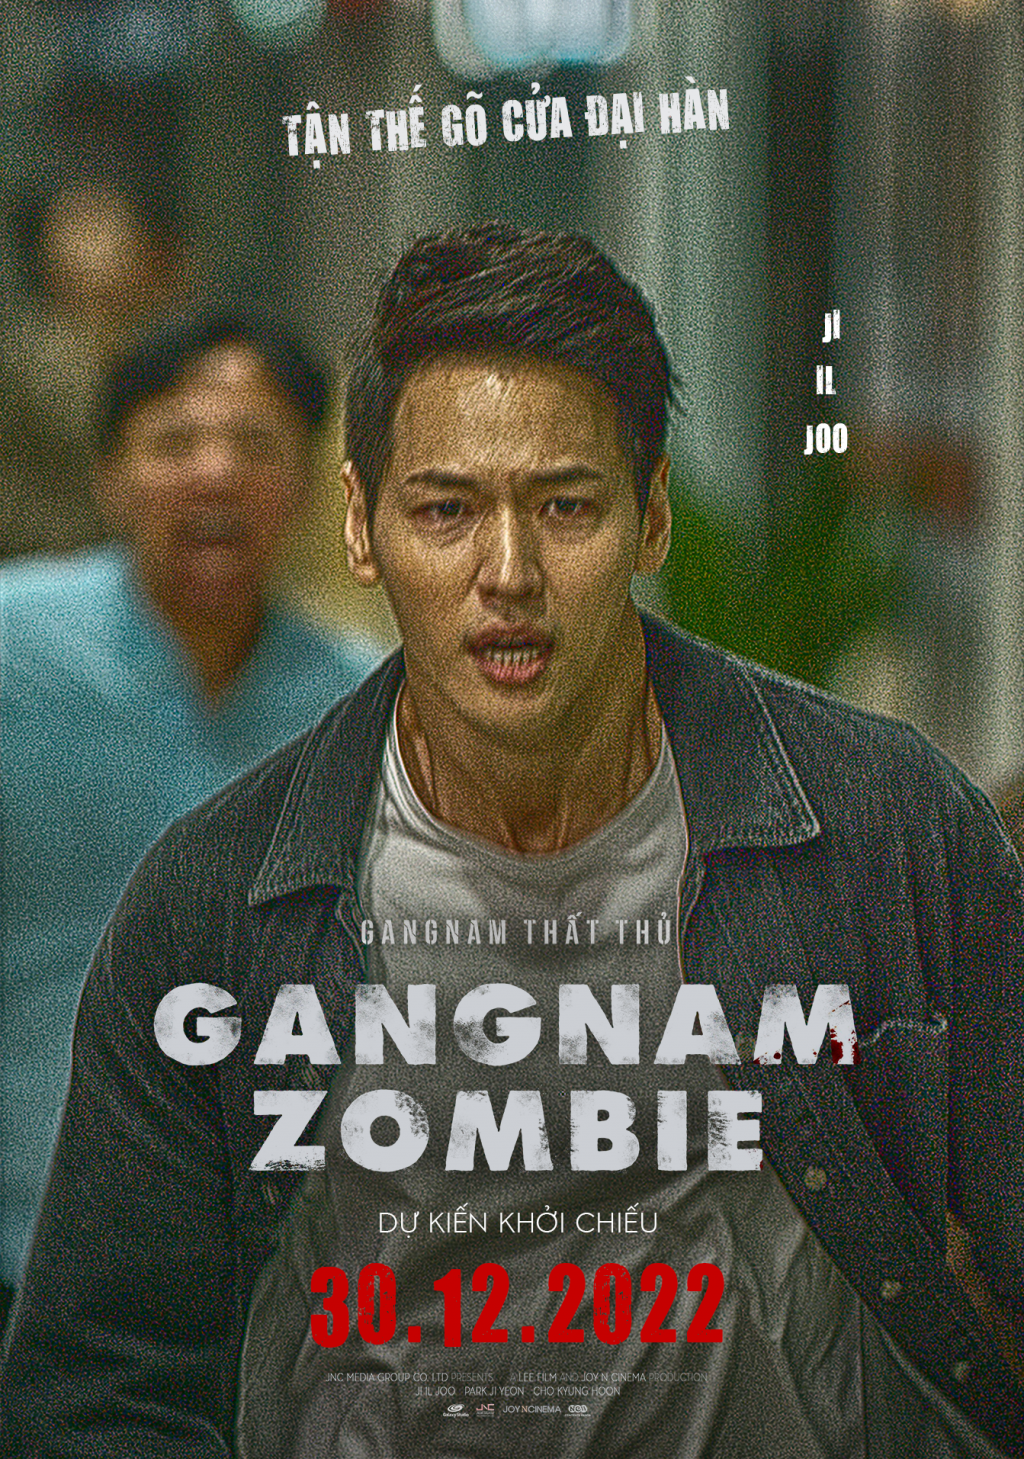 Chưa kịp hưởng trăng mật sau đám cưới, Jiyeon đã phải chạy trốn trong 'Gangnam Zombie'